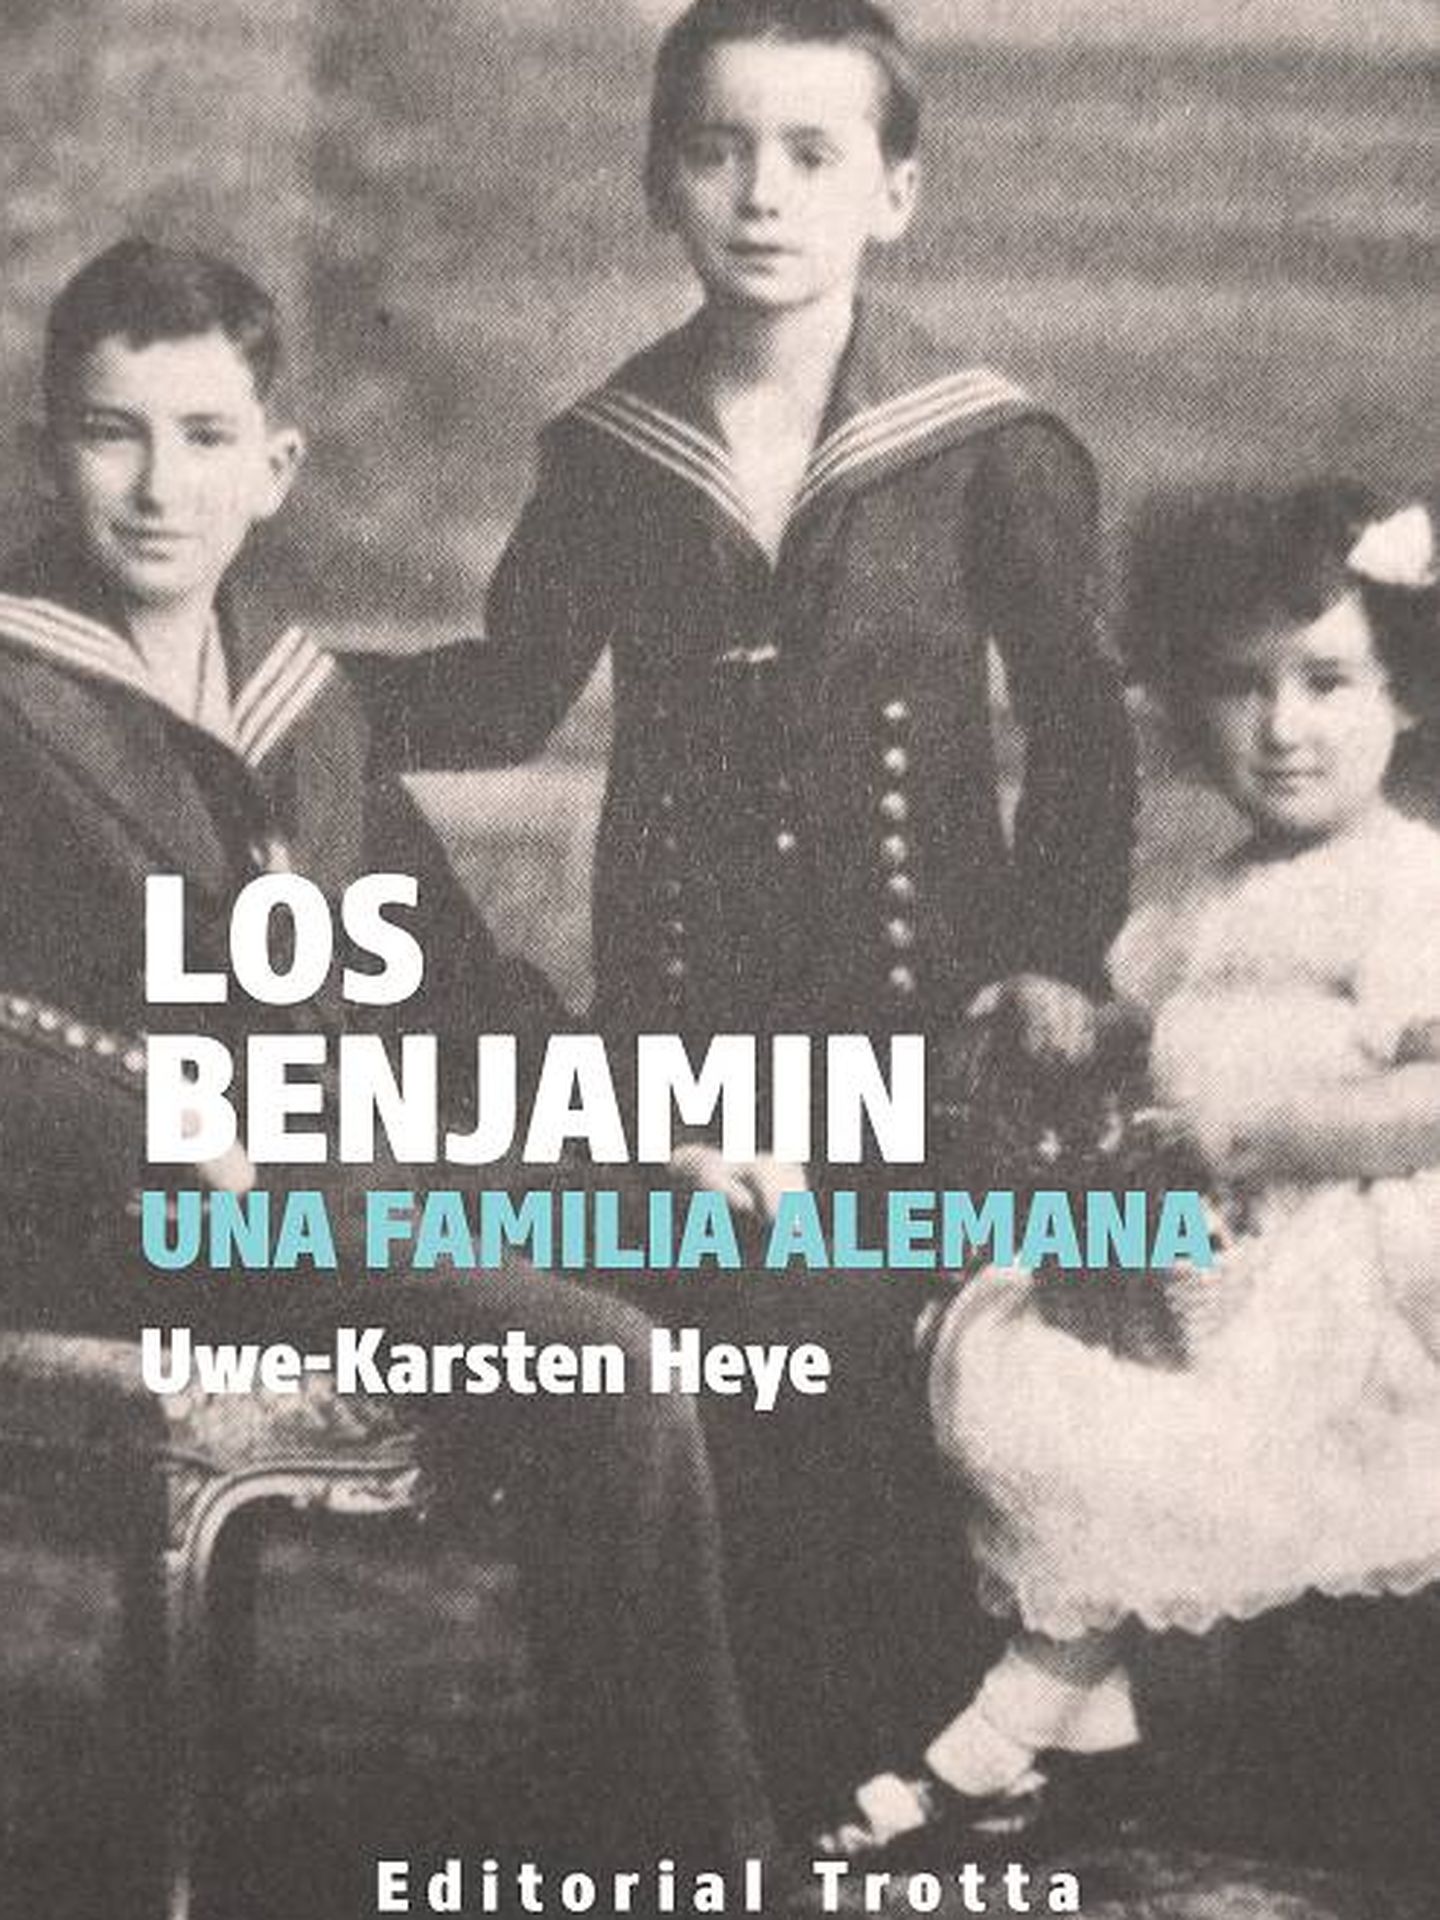 'Los Benjamin'.